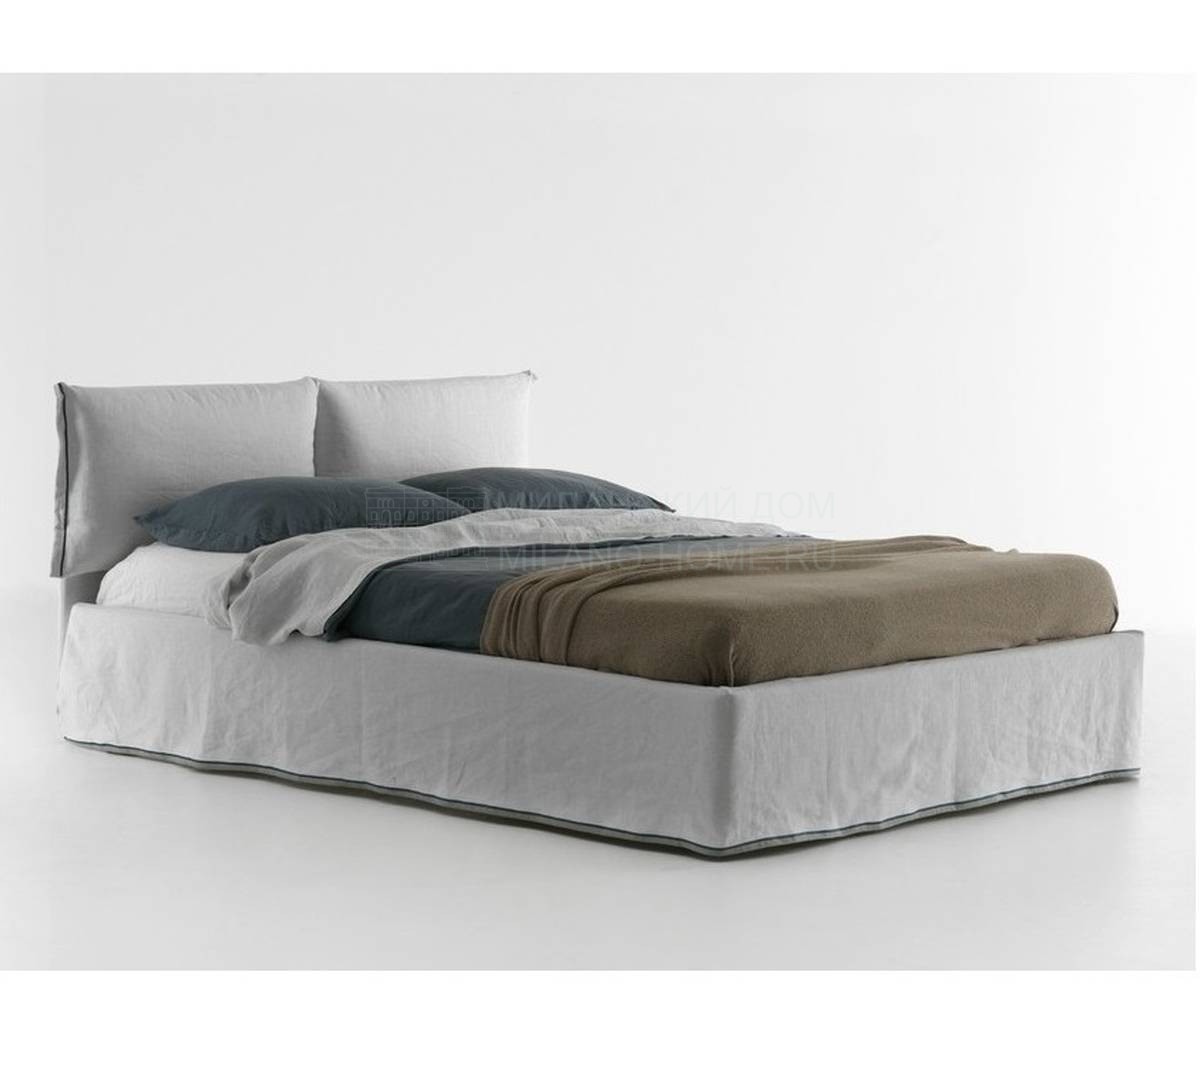 Кровать с мягким изголовьем Iorca Chic из Италии фабрики BOLZAN